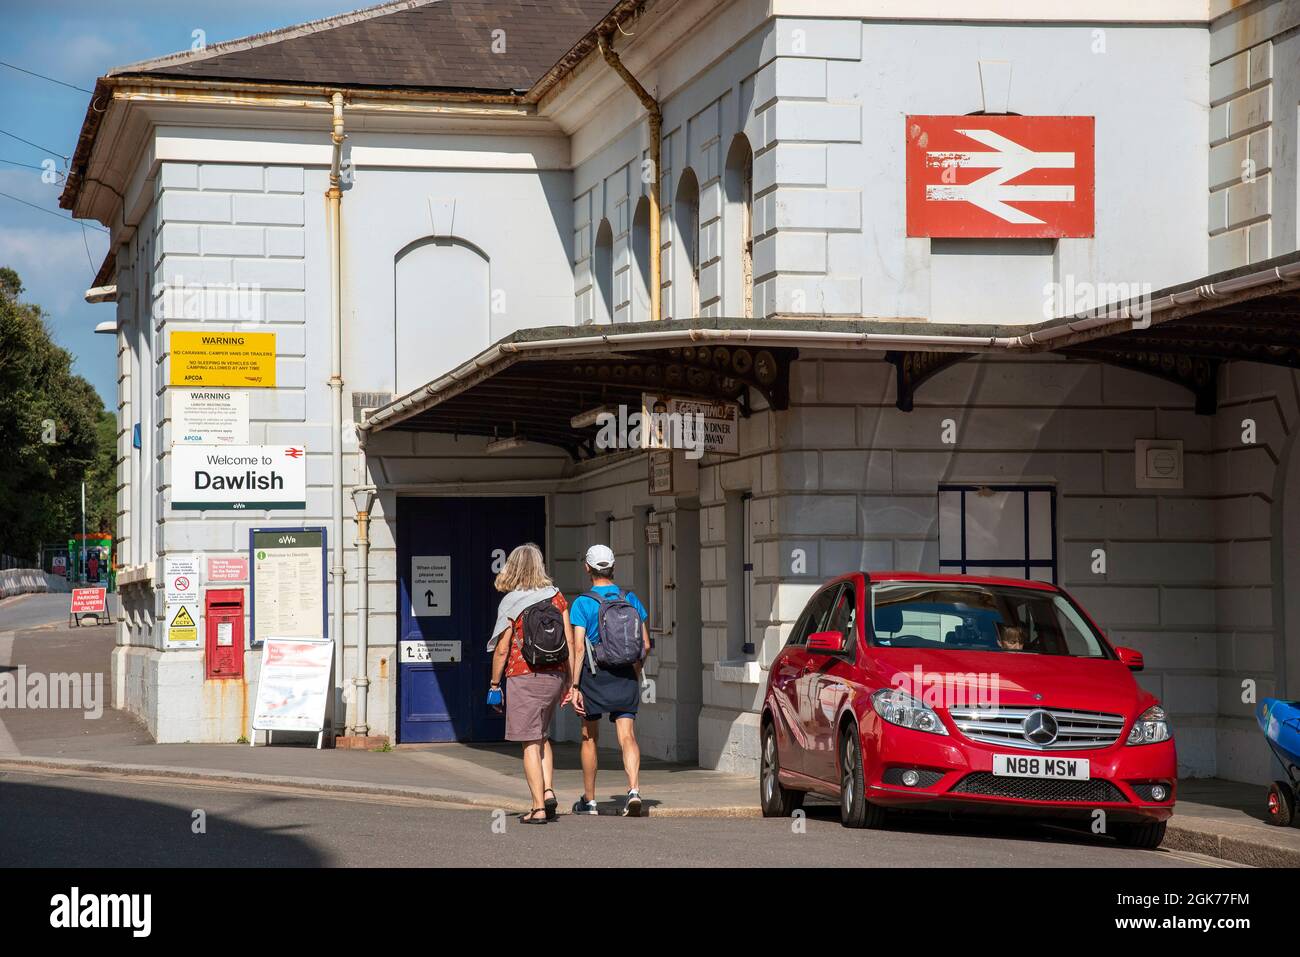 Dawlish, Devon, Angleterre, Royaume-Uni. 2021. Immeuble de la gare de la station balnéaire de Dawlish, vue extérieure avec voiture garée et passagers. Banque D'Images